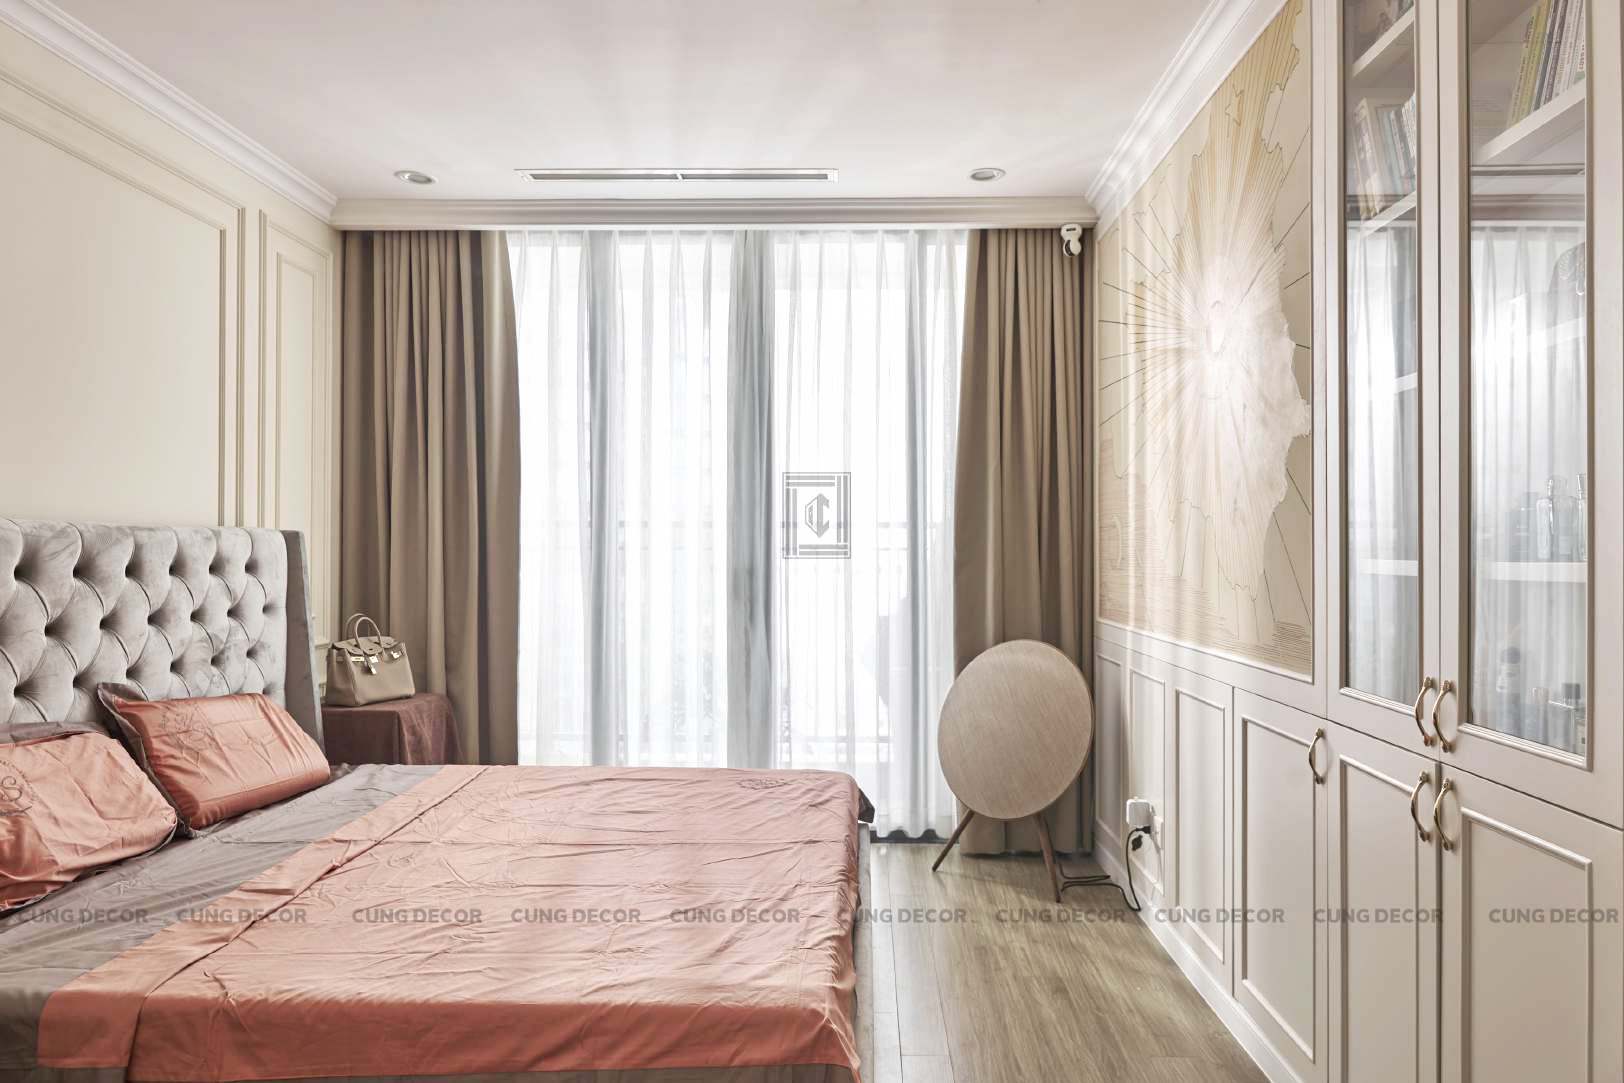 Hoàn thiện nội thất phòng ngủ Căn hộ Landmark 81 Vinhomes Central Park phong cách Tân cổ điển Neo Classic